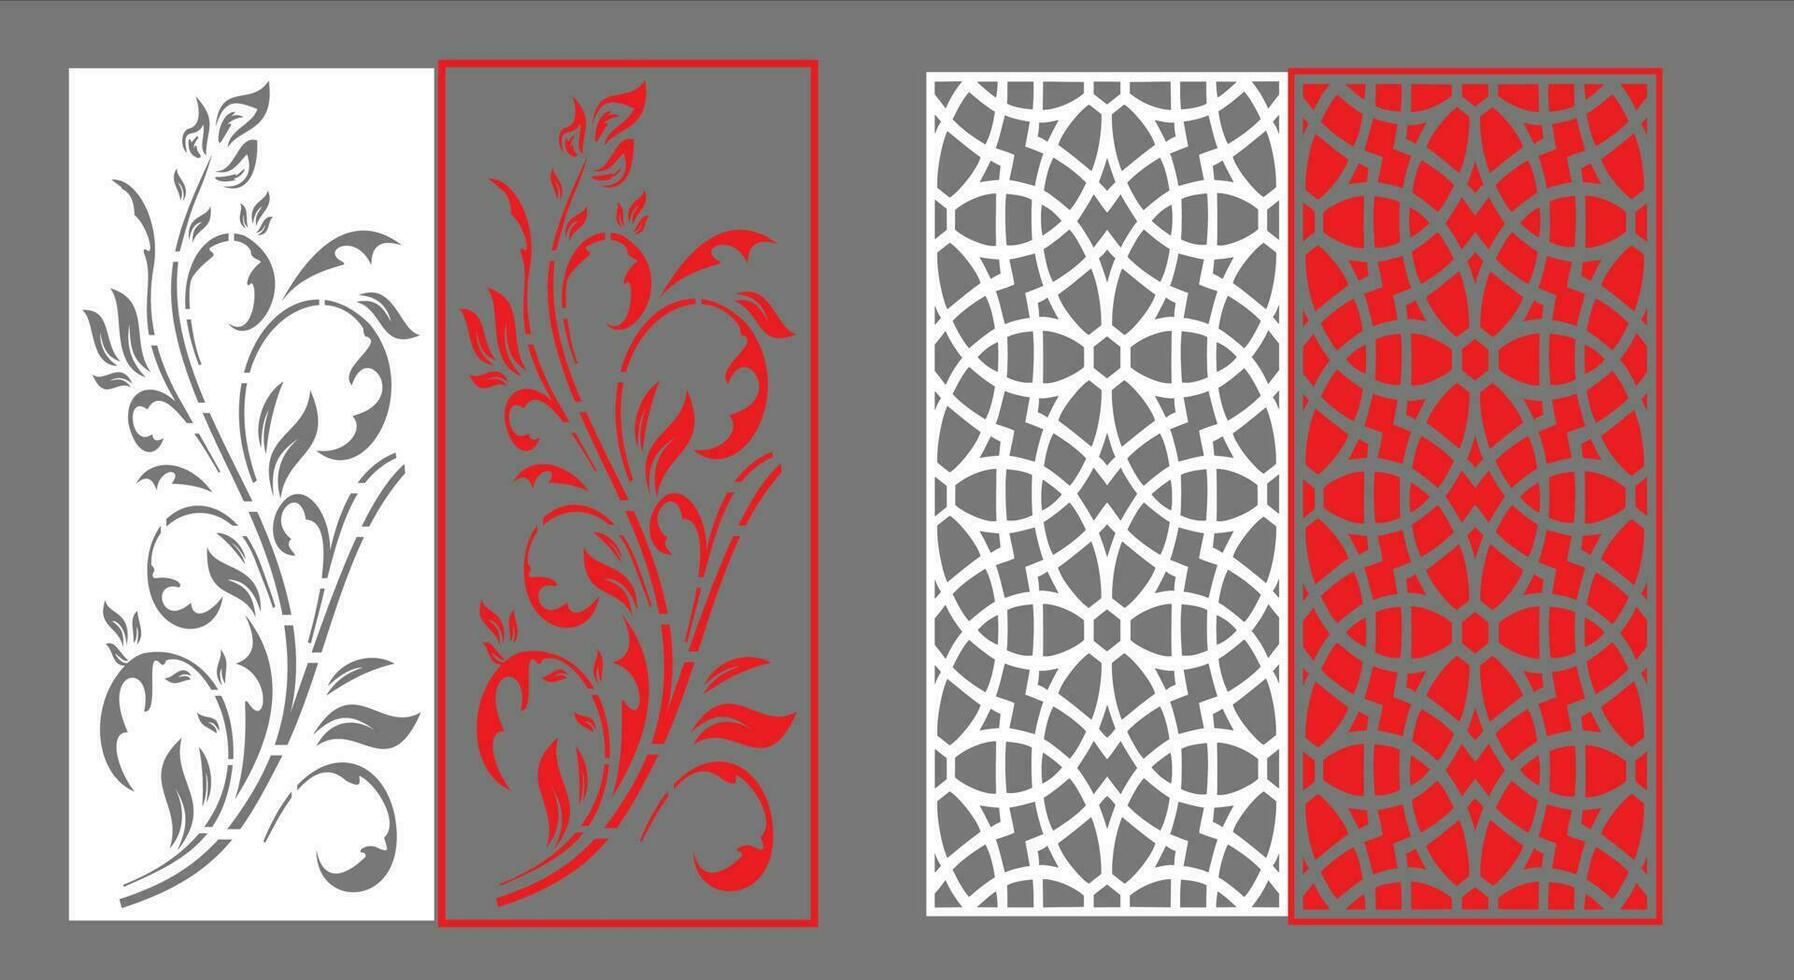 dekorativ vägg paneler uppsättning Jali design cnc mönster, laser skärande mönster, router cnccutting.jali laser skära dekorativ panel uppsättning med spets mönster. vektor